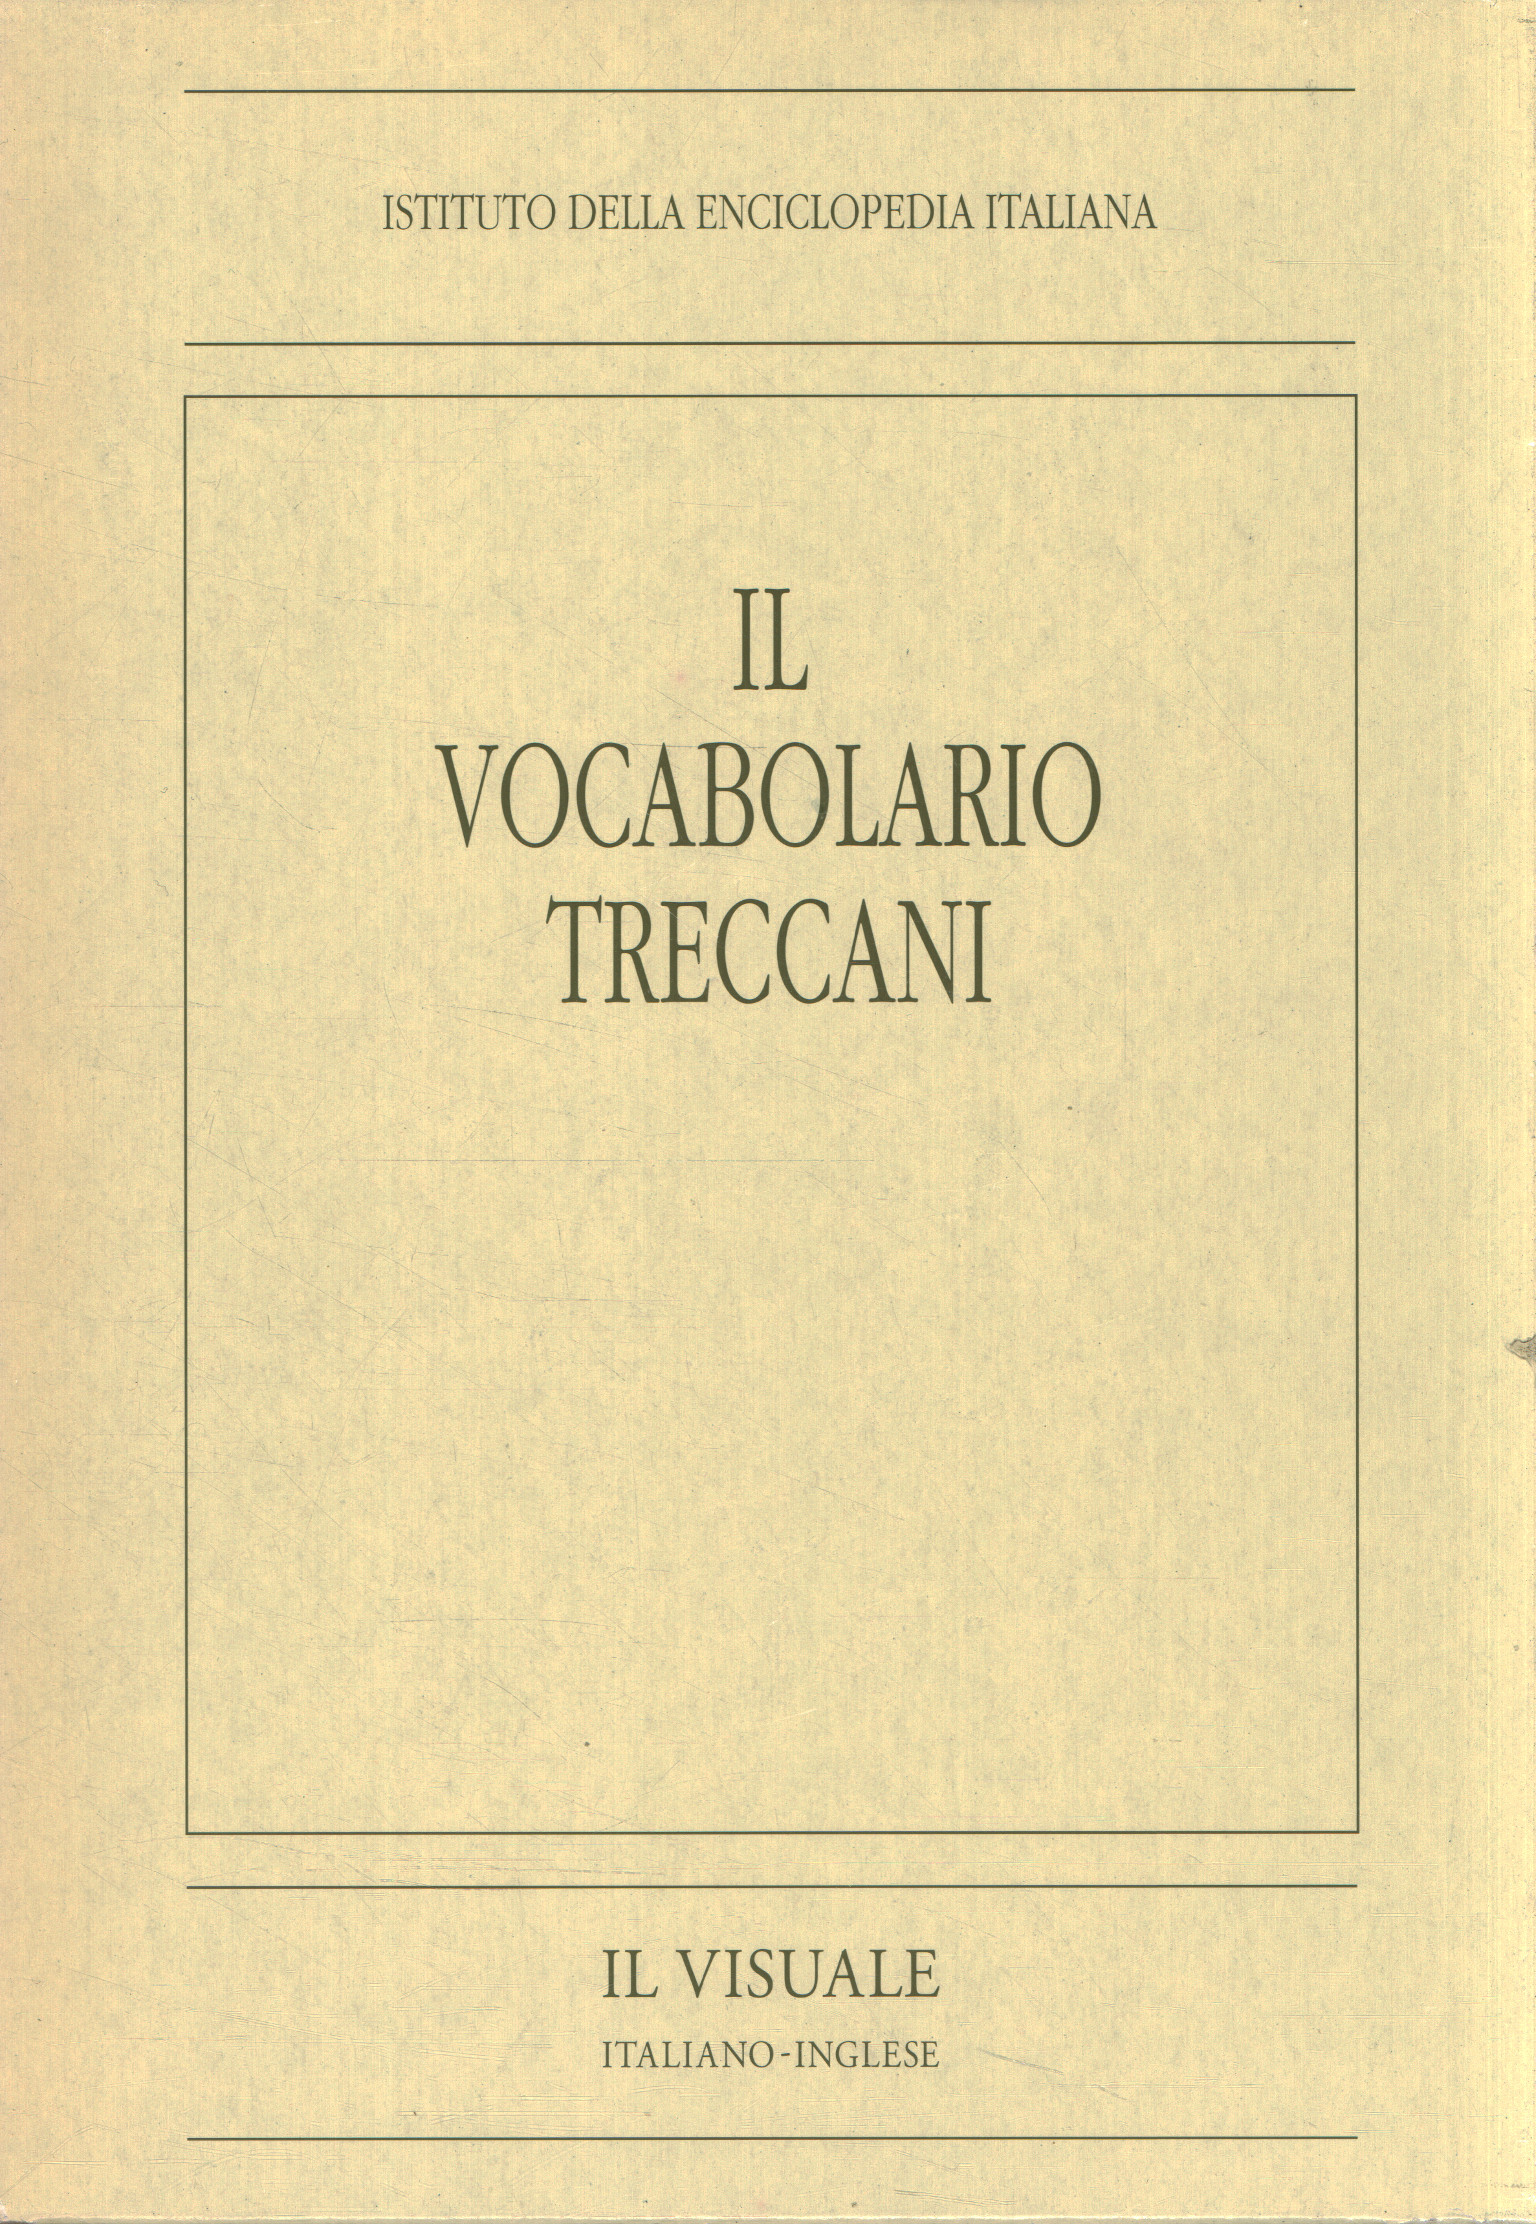 The Treccani vocabulary. The Italian view